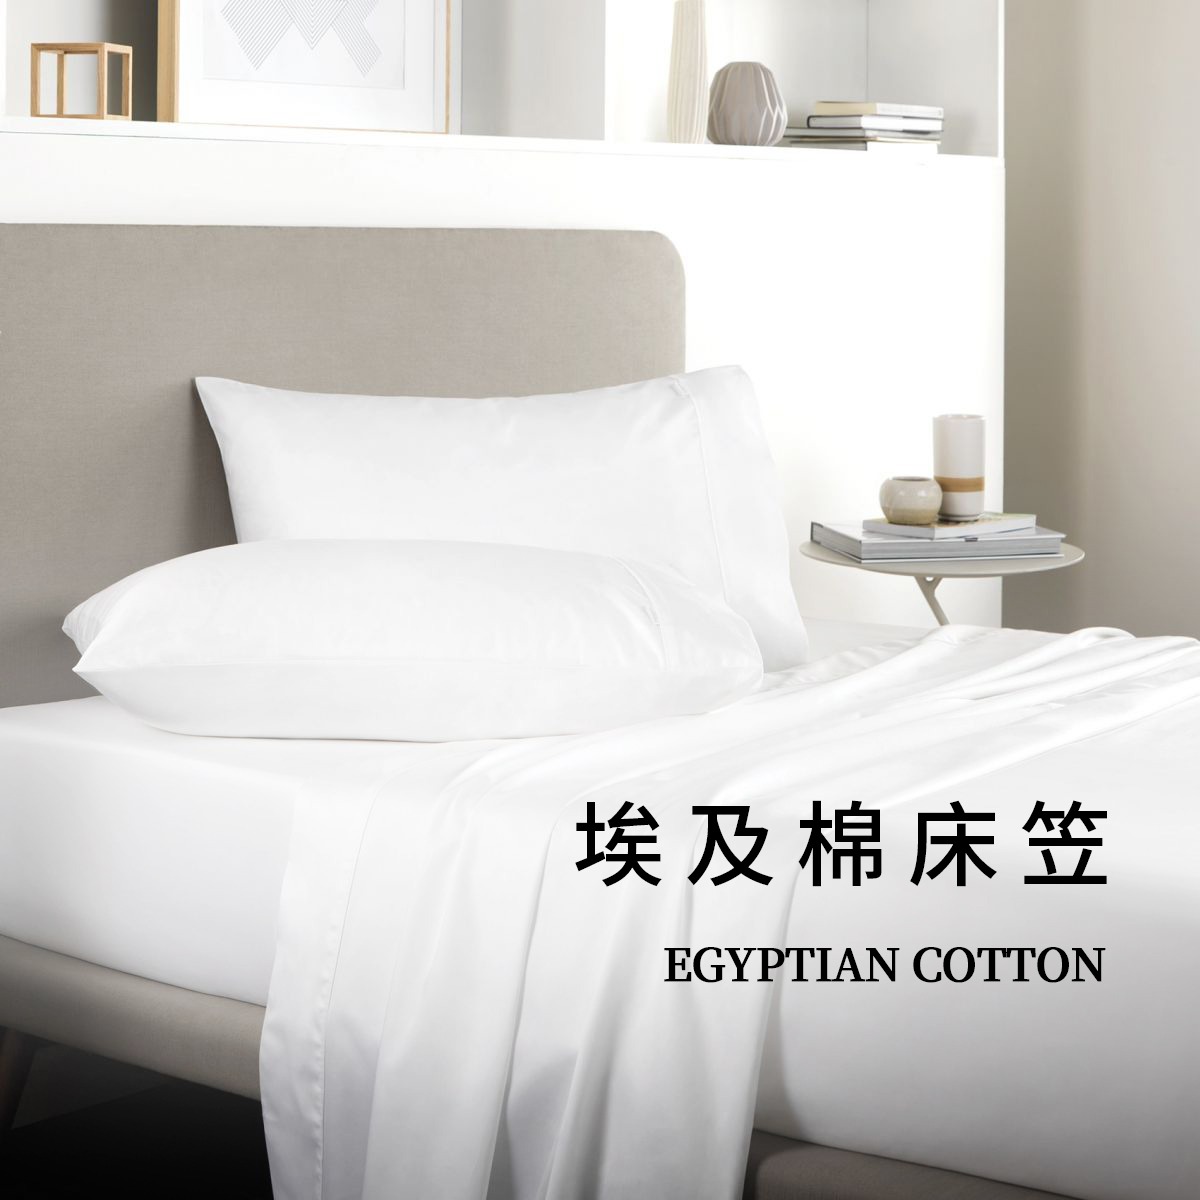 140支进口埃及棉床笠纯棉单件床单床垫保护罩防滑裸睡订做床笠